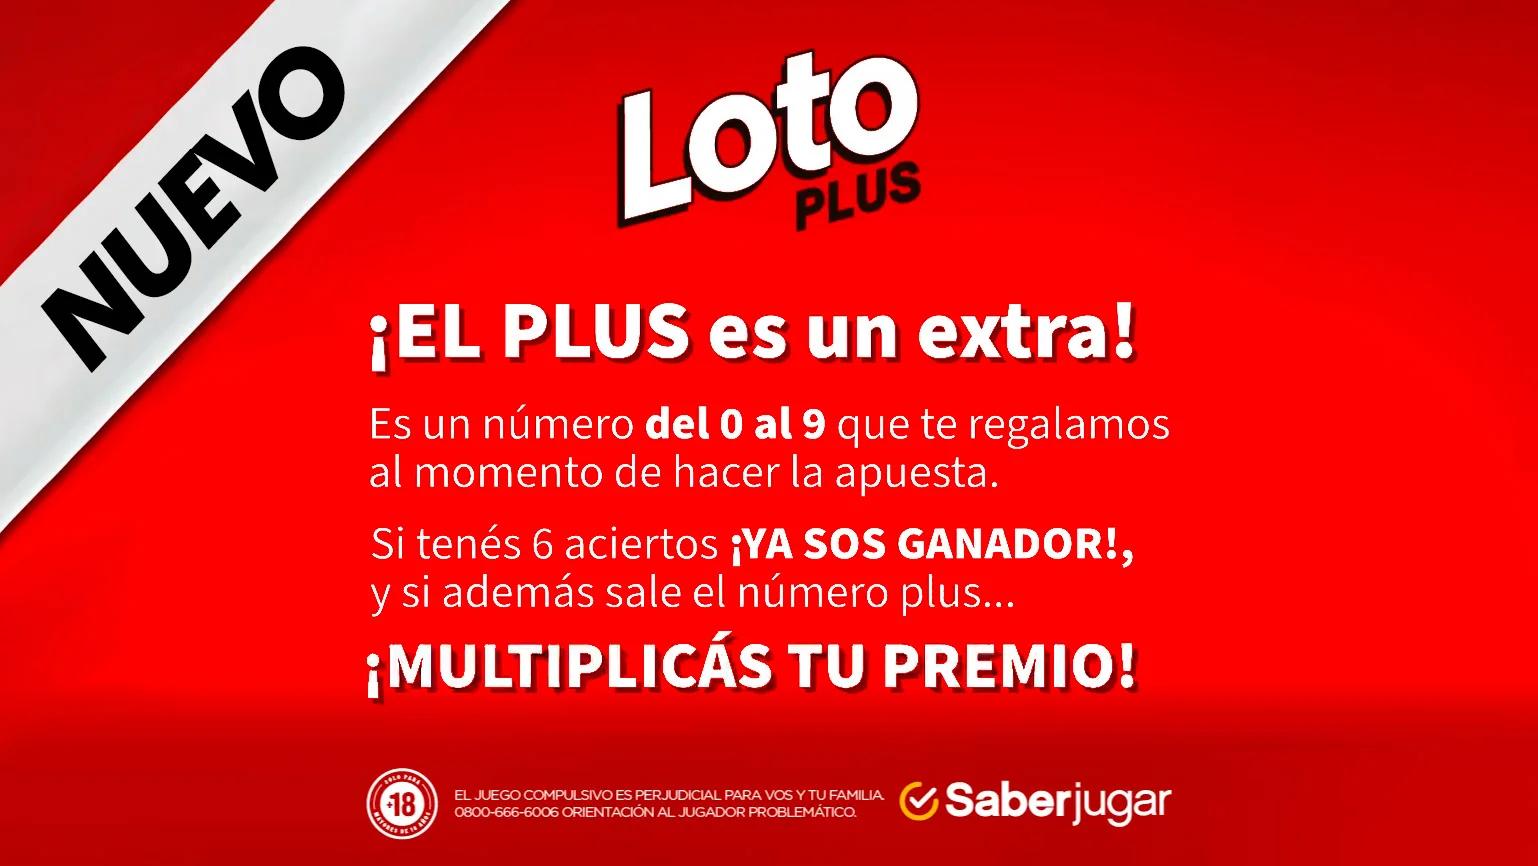 loto plus que dias se juega - Cómo se juega el Loto Plus en Argentina